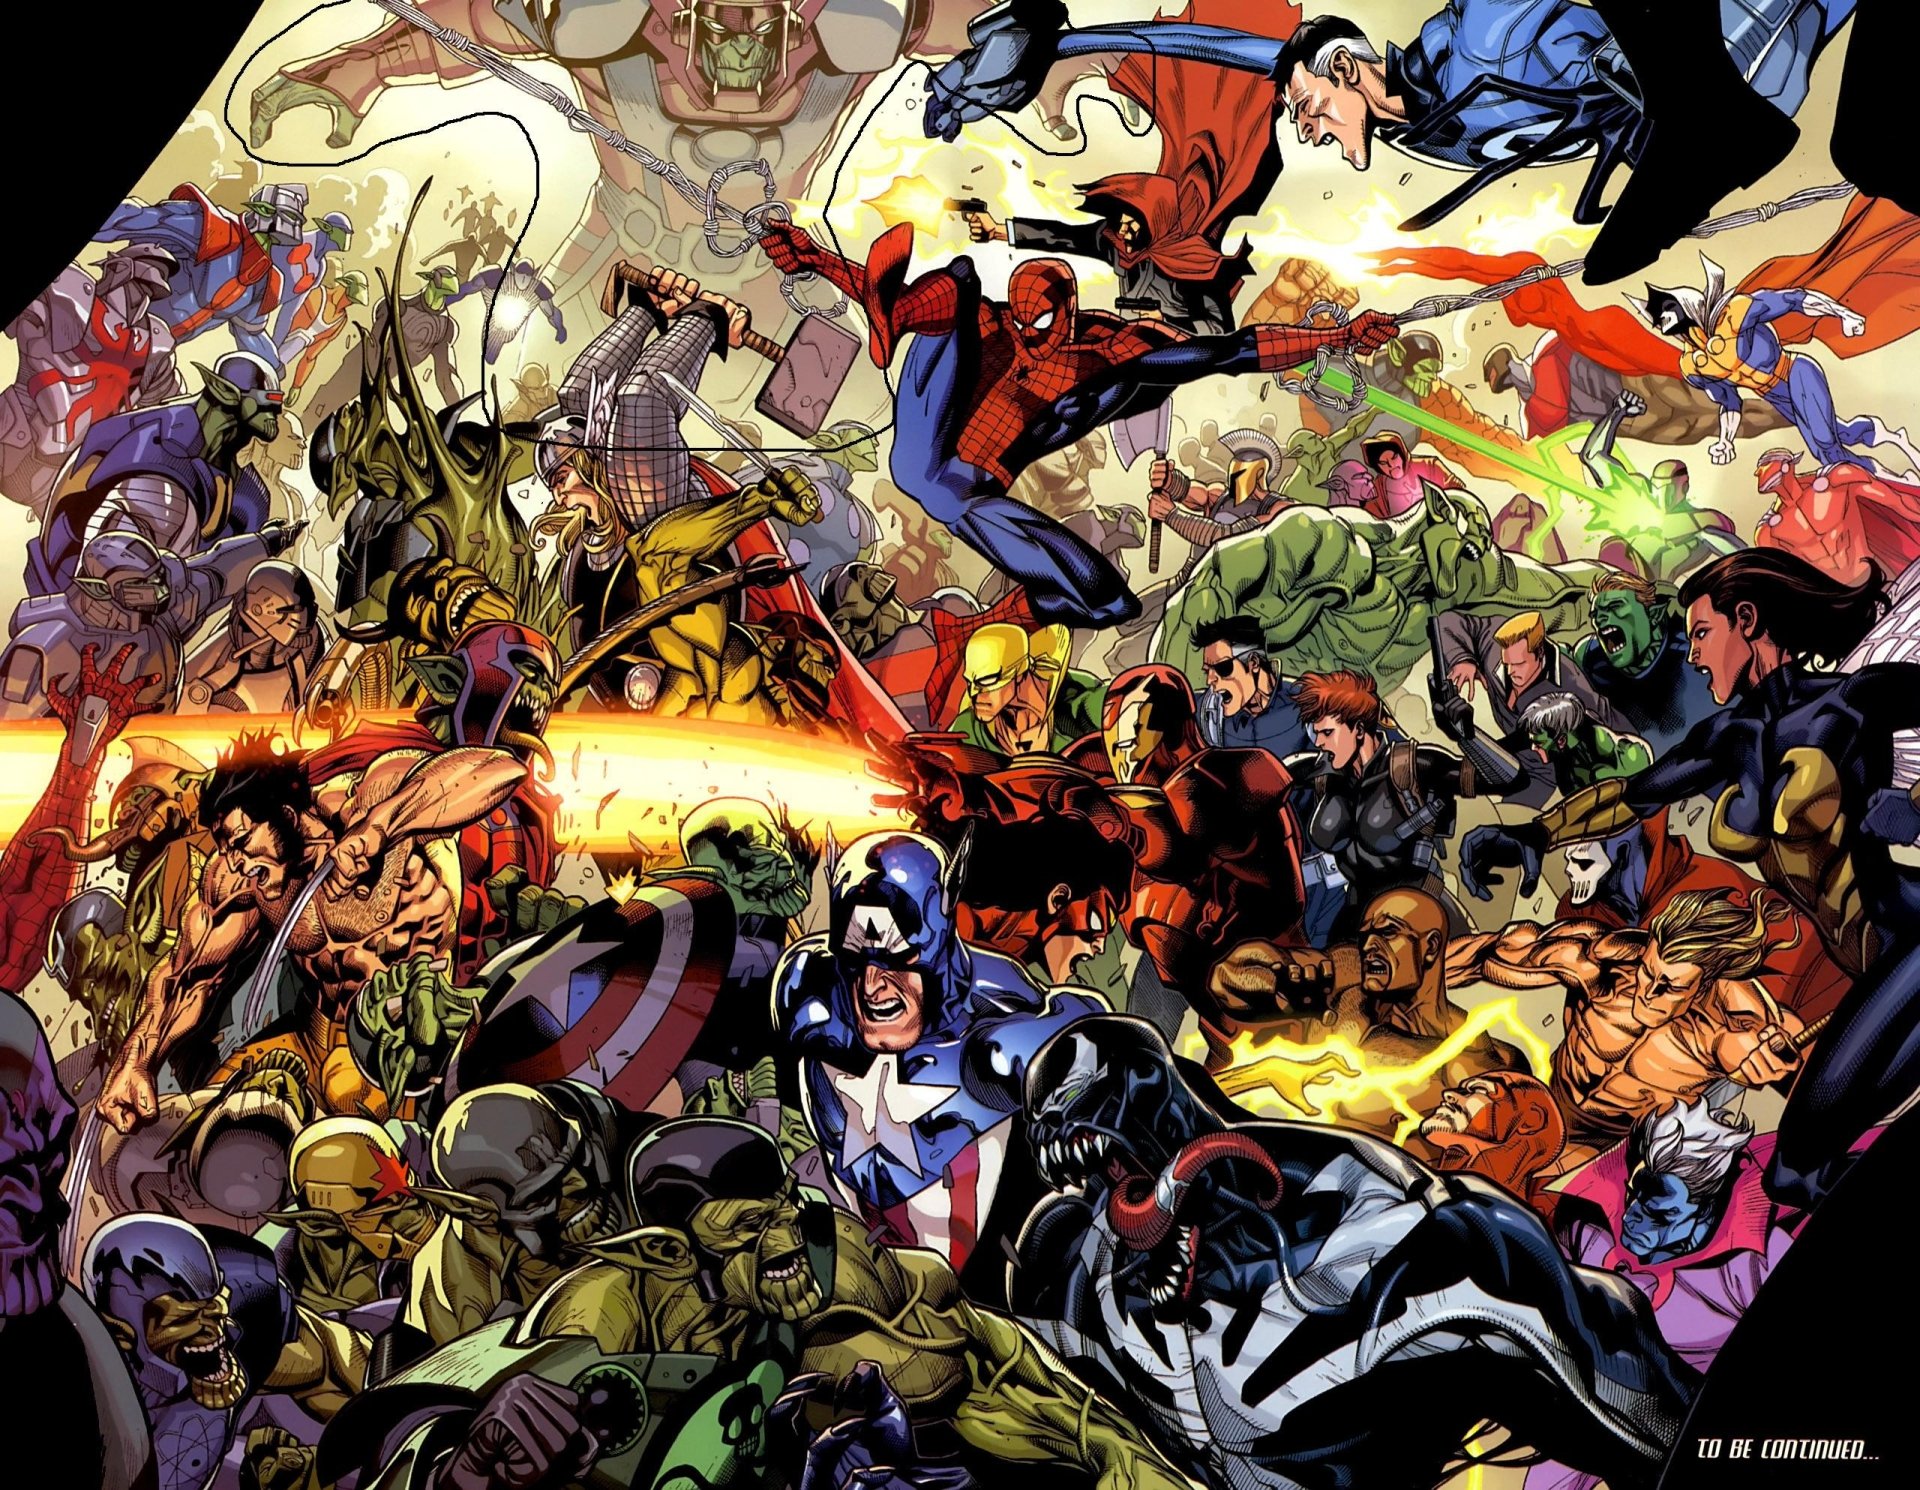 fond d'écran marvel comics hd,des bandes dessinées,personnage fictif,fiction,super héros,héros